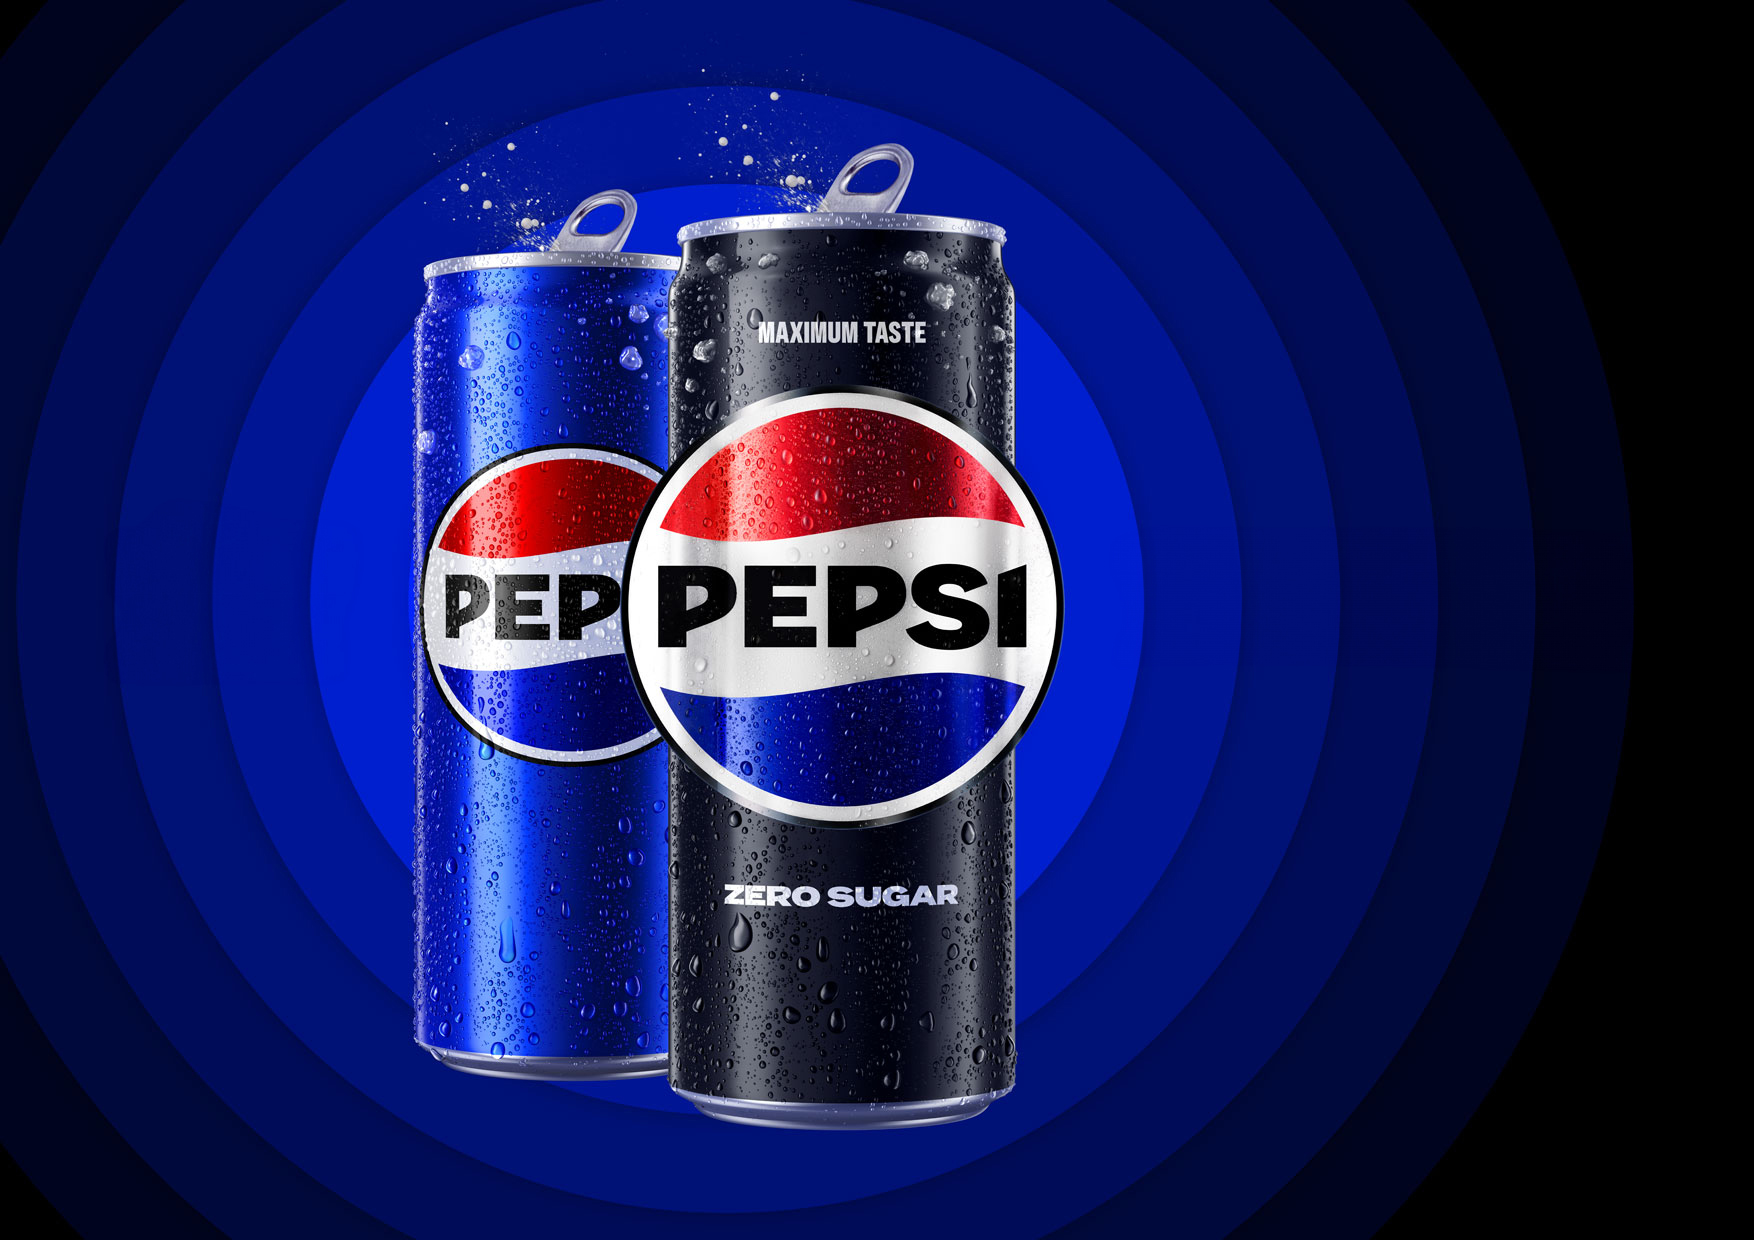 Merész életfilozófia és márkatörténeti örökség – Magyarországon is megújult a Pepsi arculata